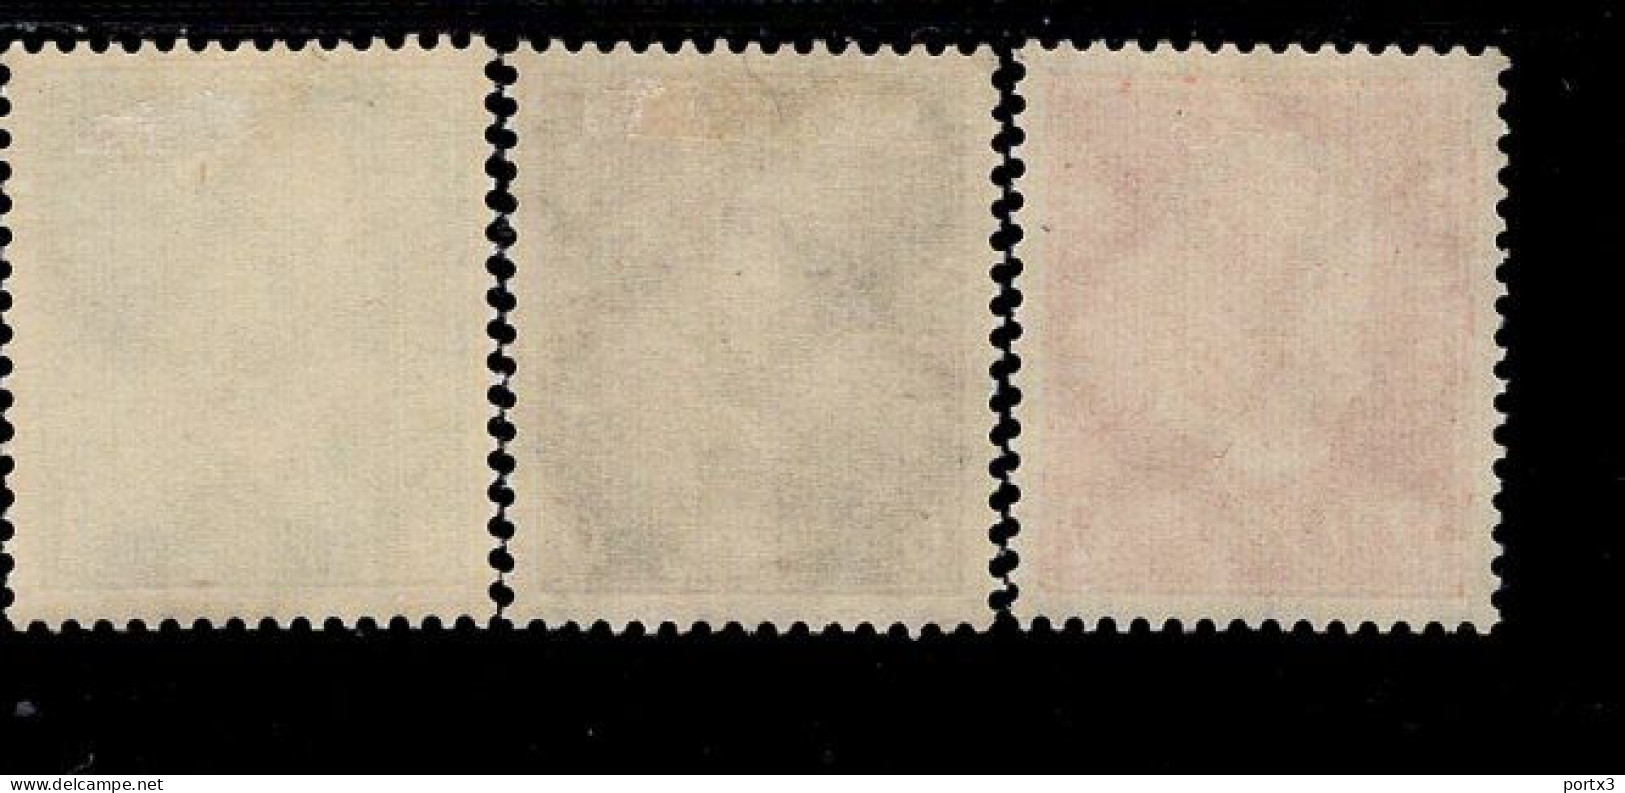 Deutsches Reich 454 + 465 + 466 Reichspräsidenten MLH * Falz - Unused Stamps